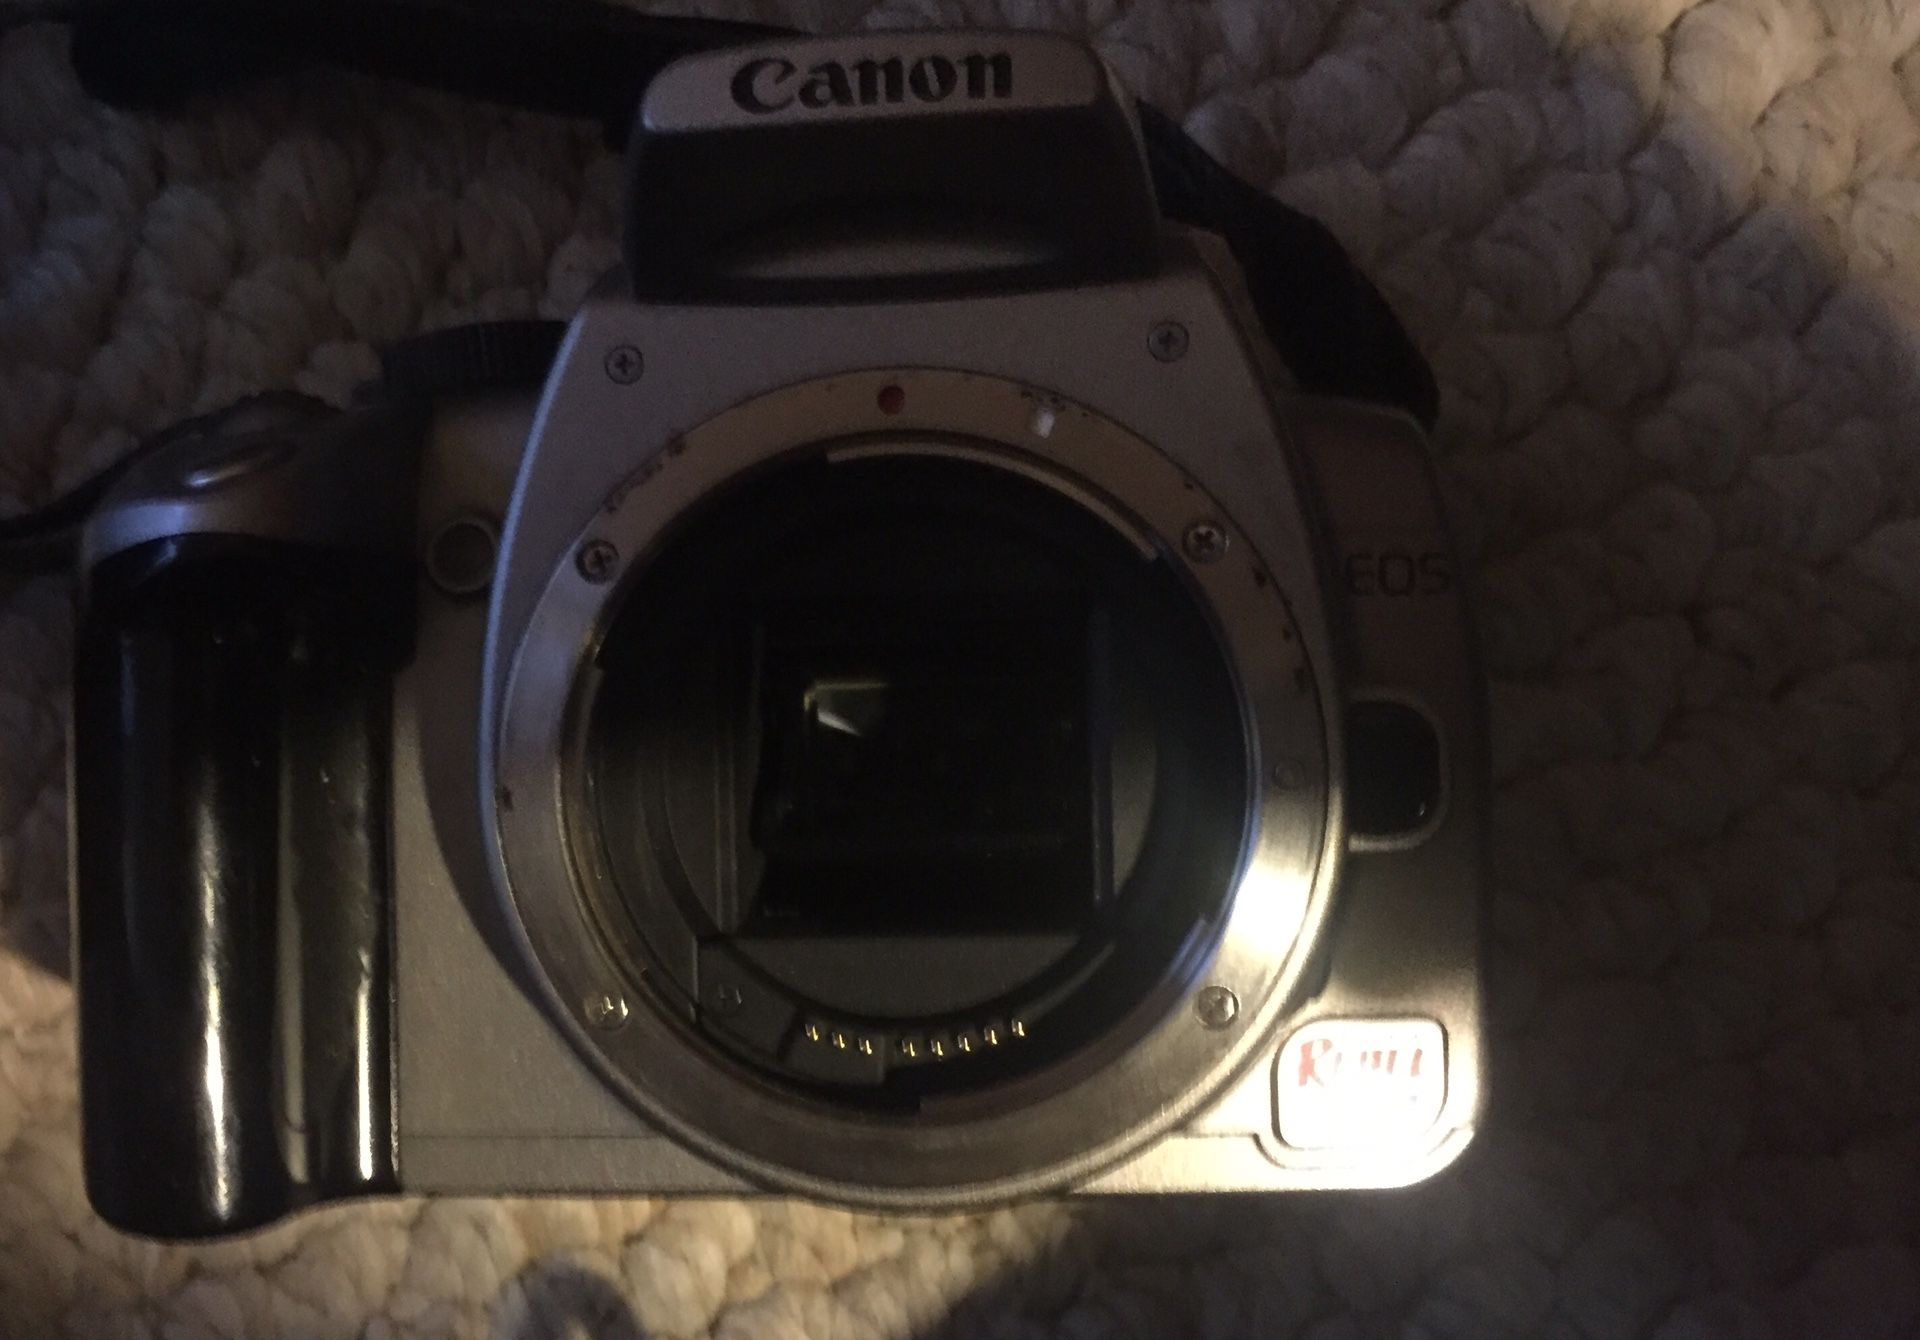 Canon camera with tamron lens